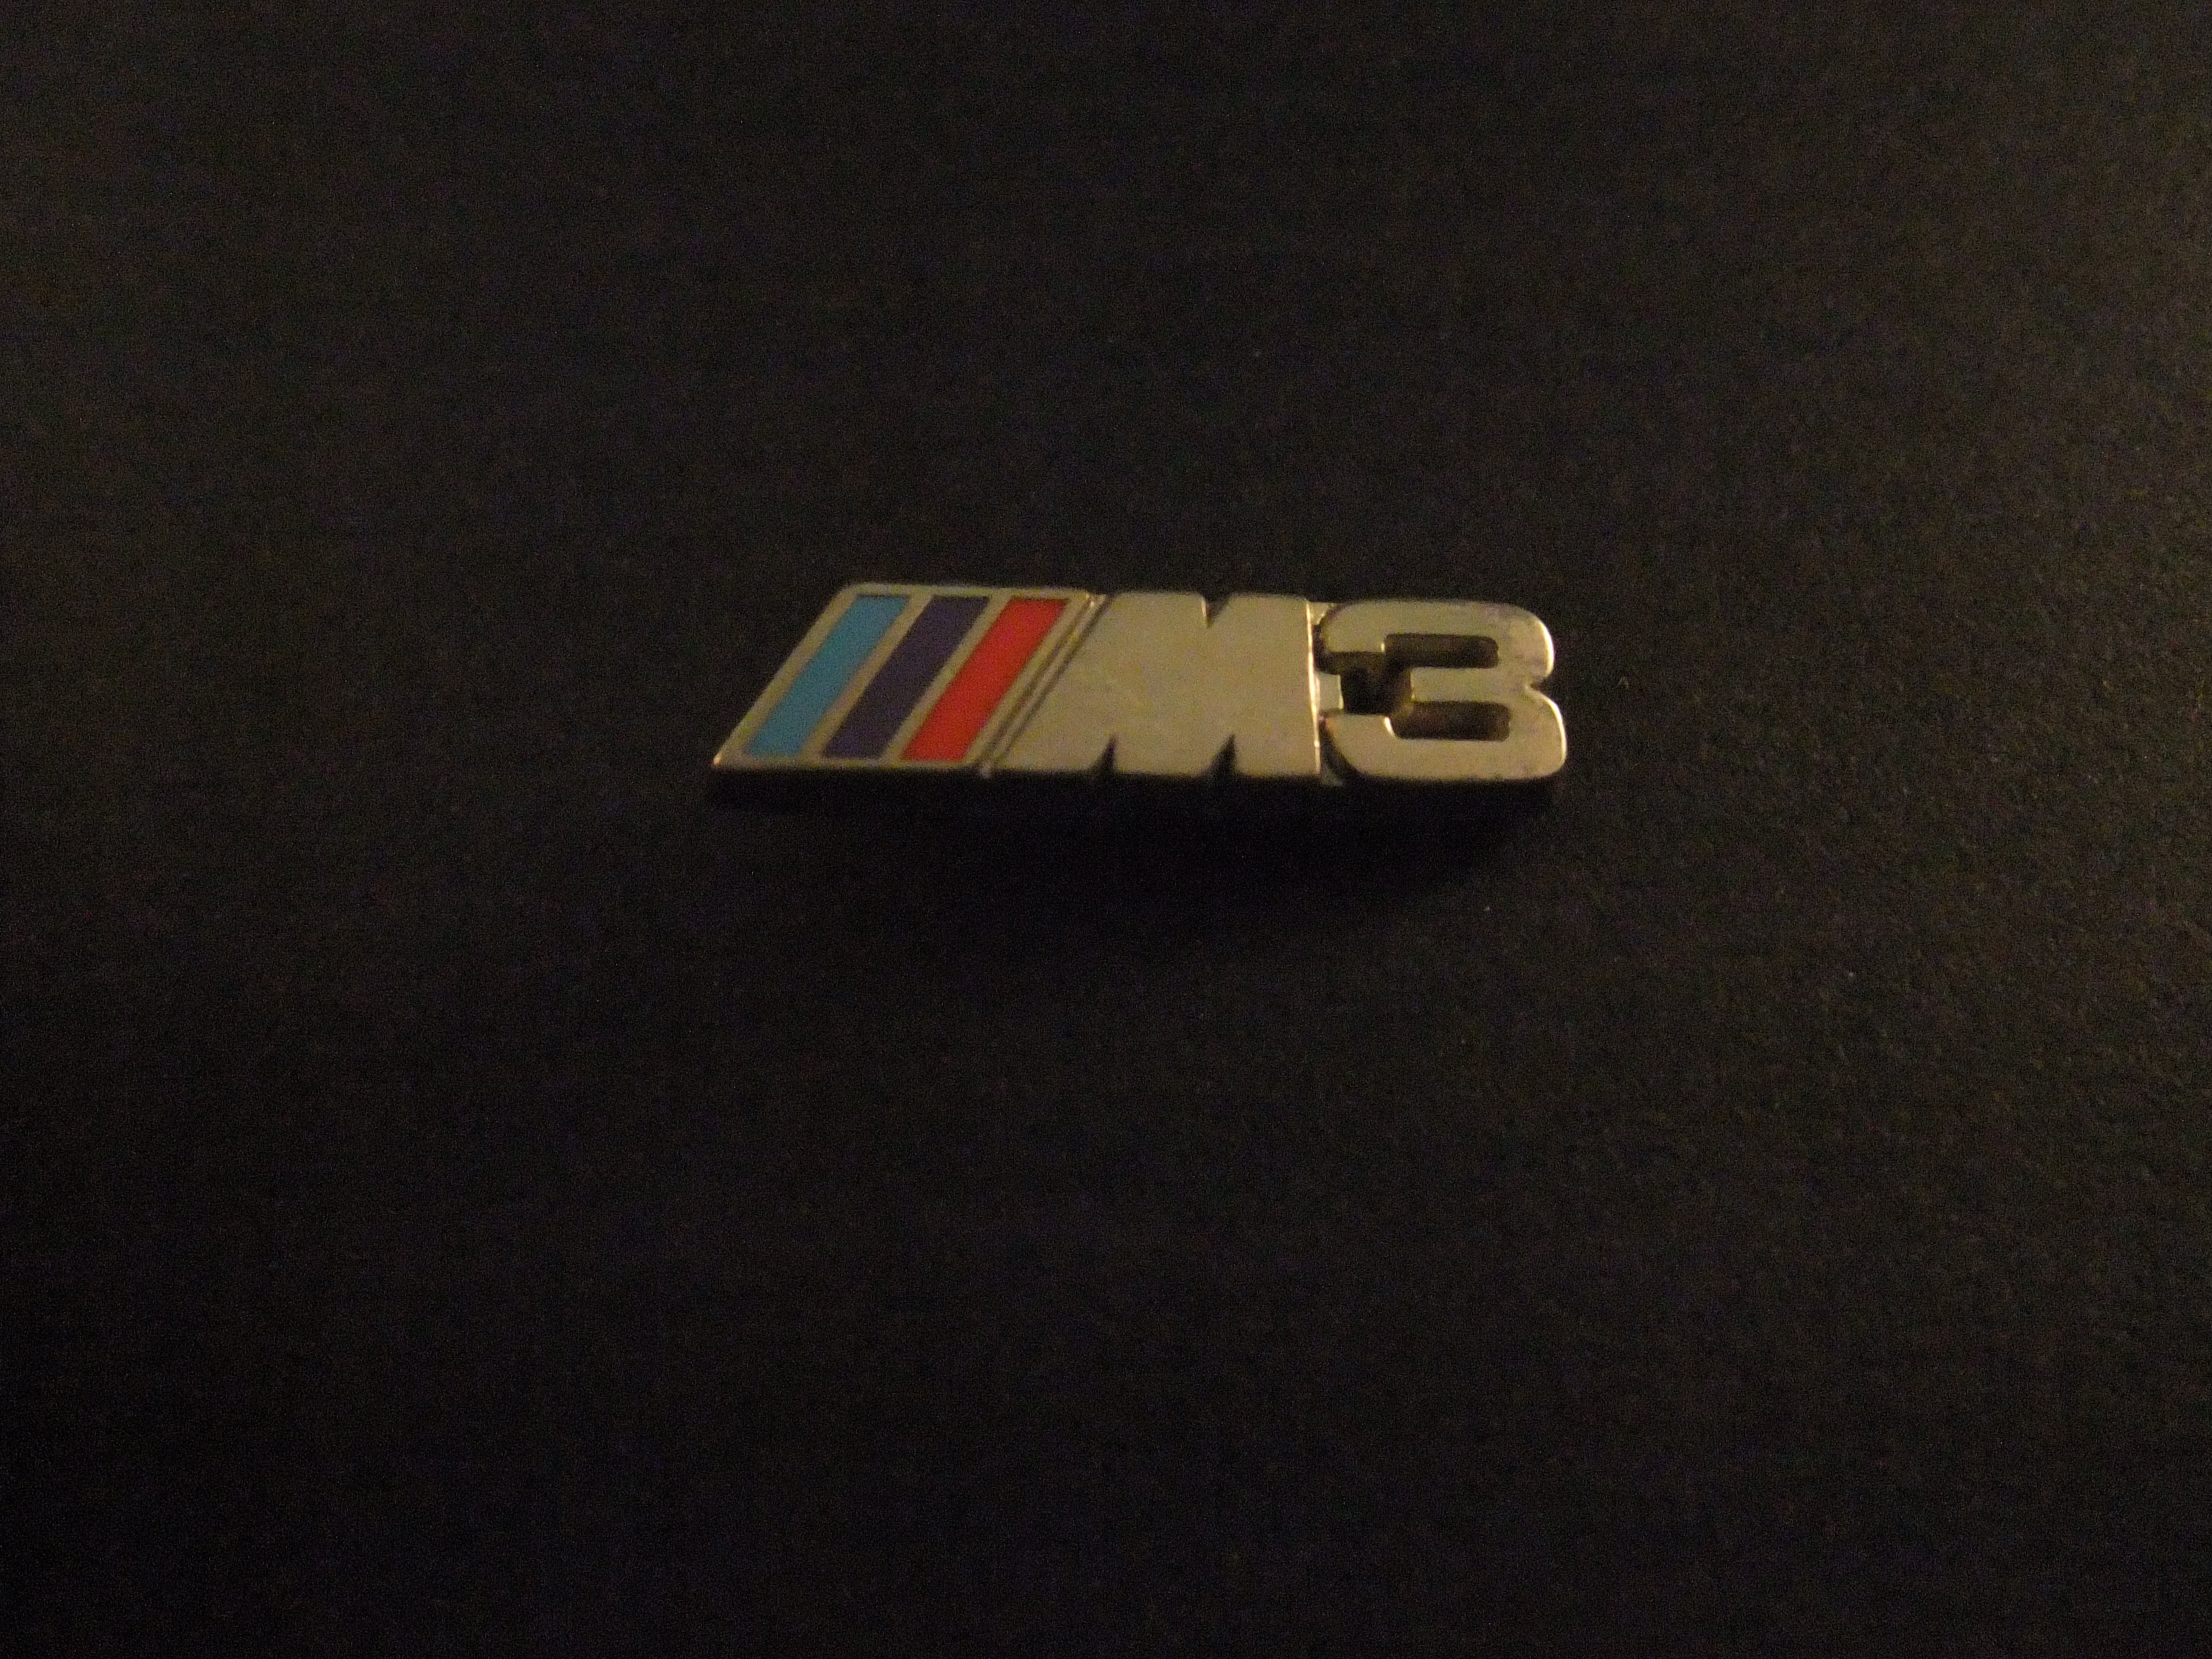 BMW M3 (sportversie van de 3-reeks) logo